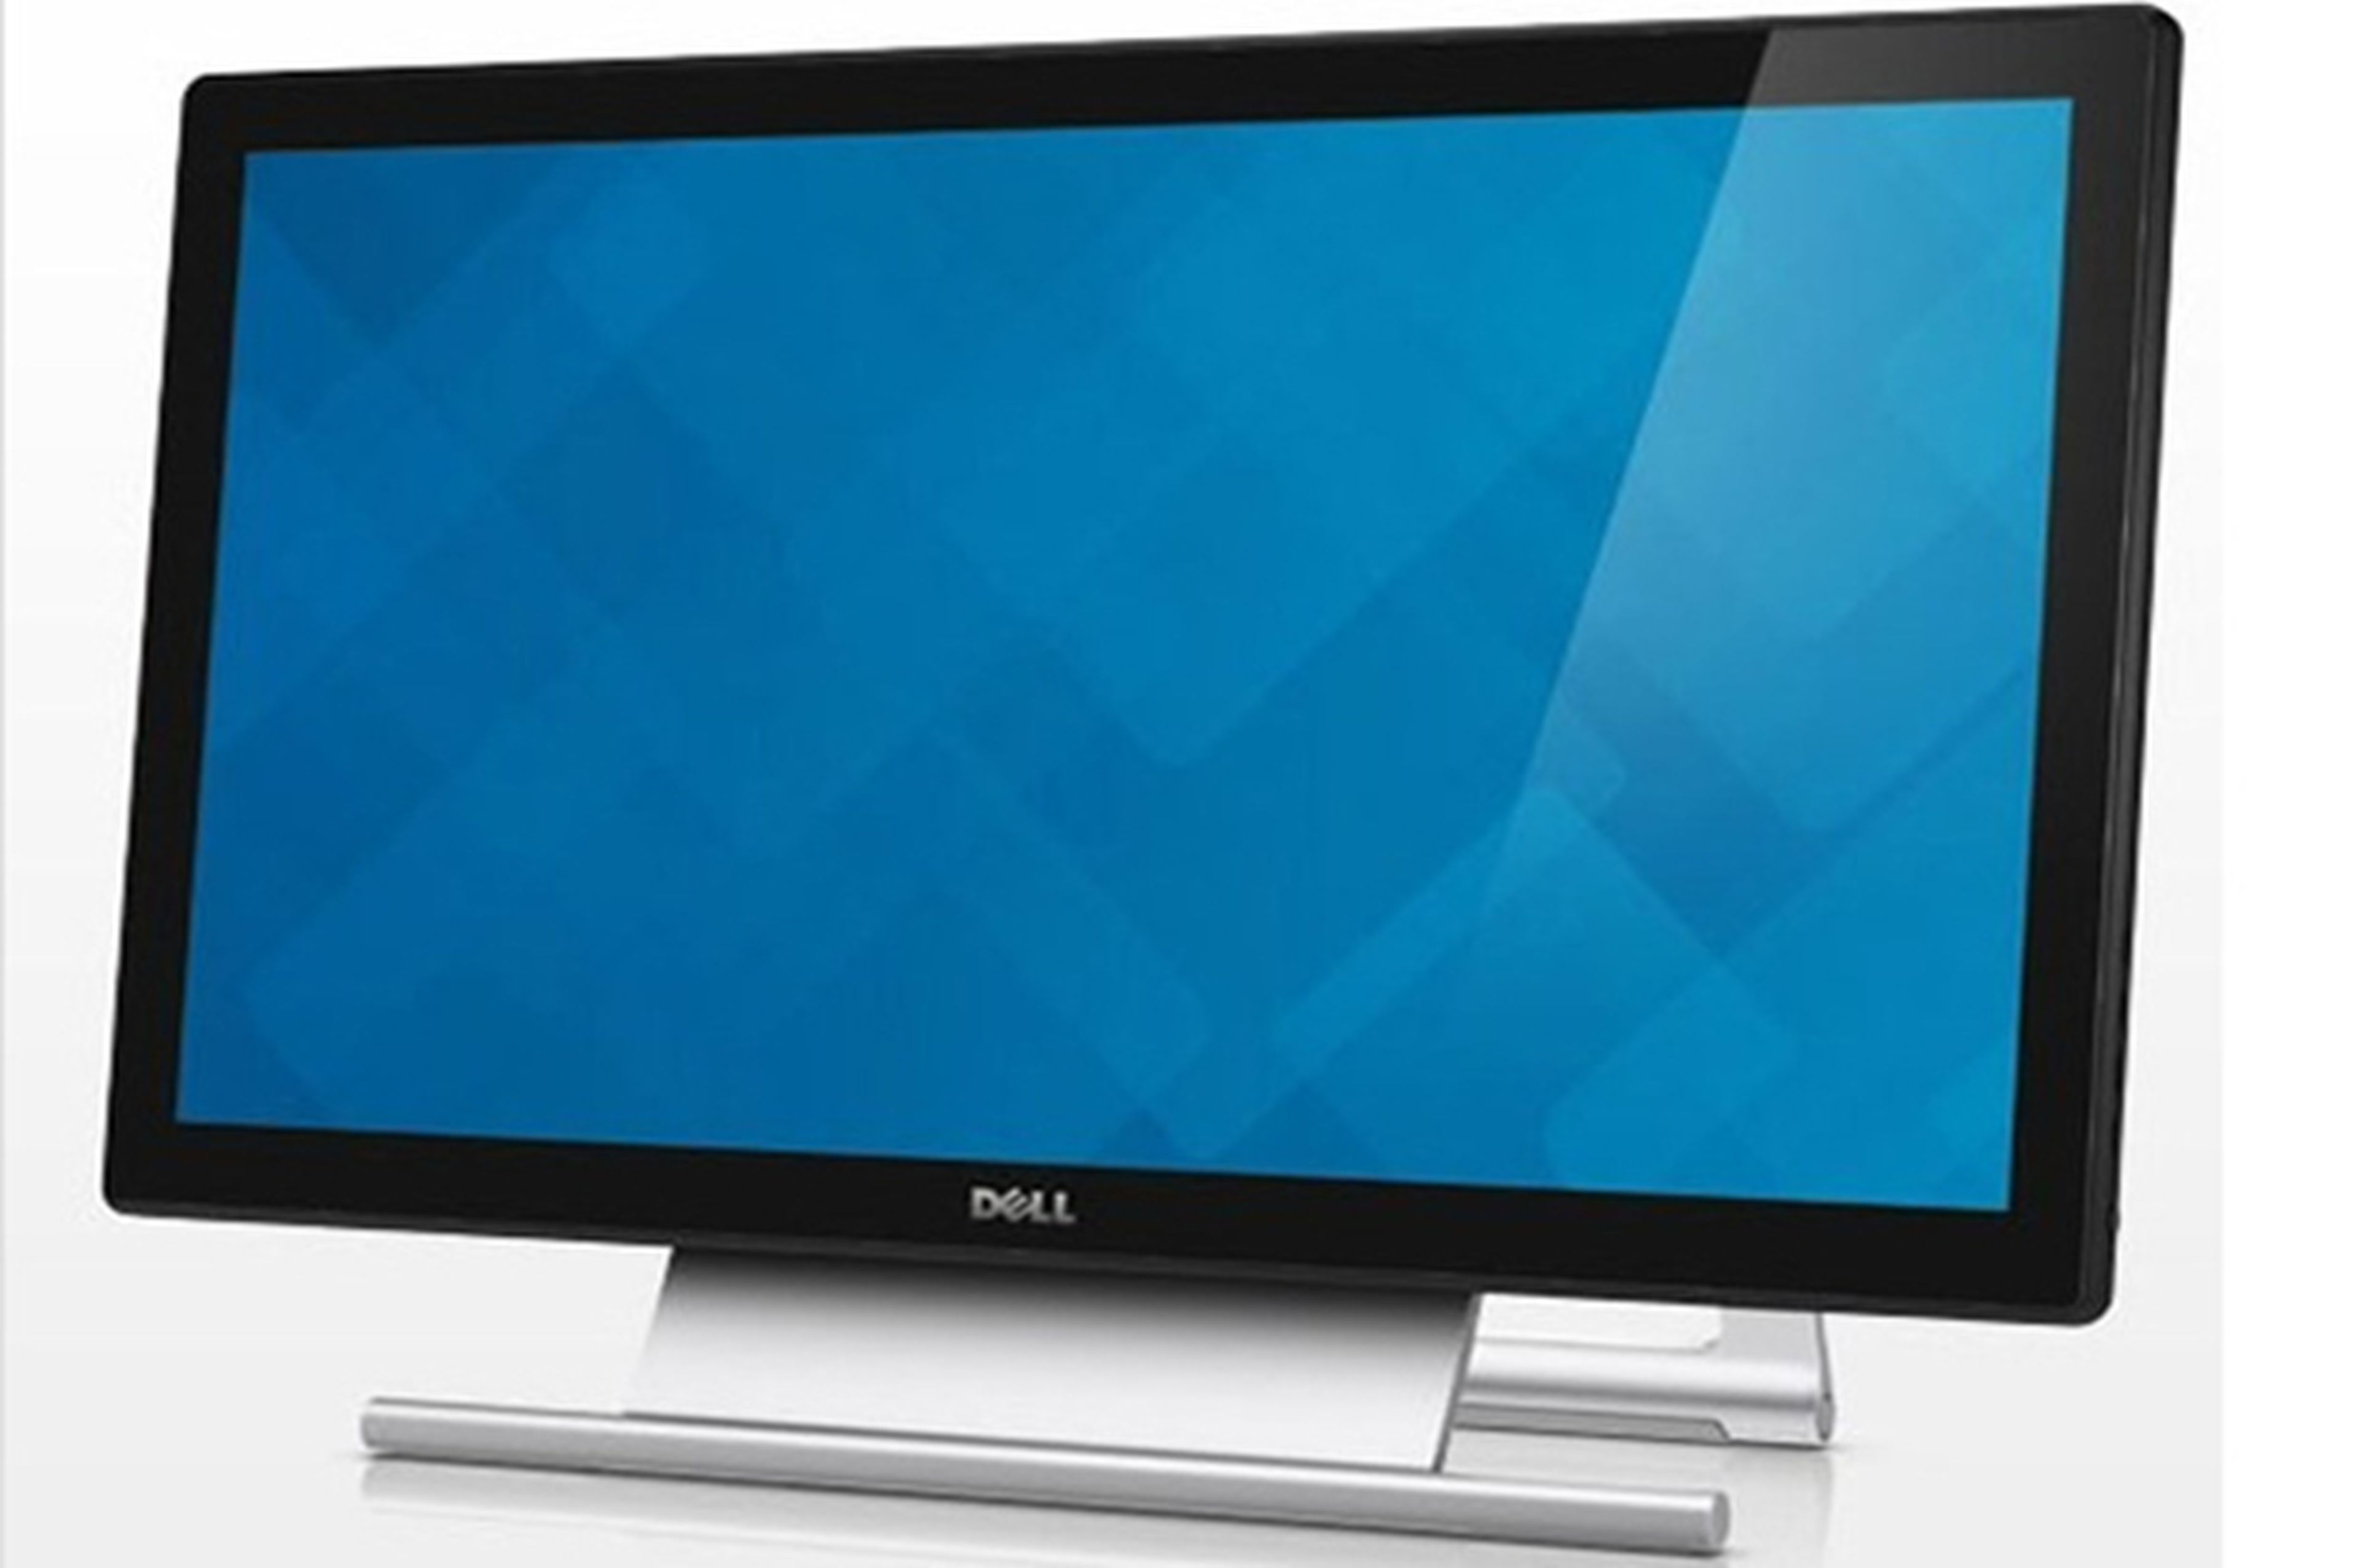 Dell presenta su nueva gama de monitores táctiles